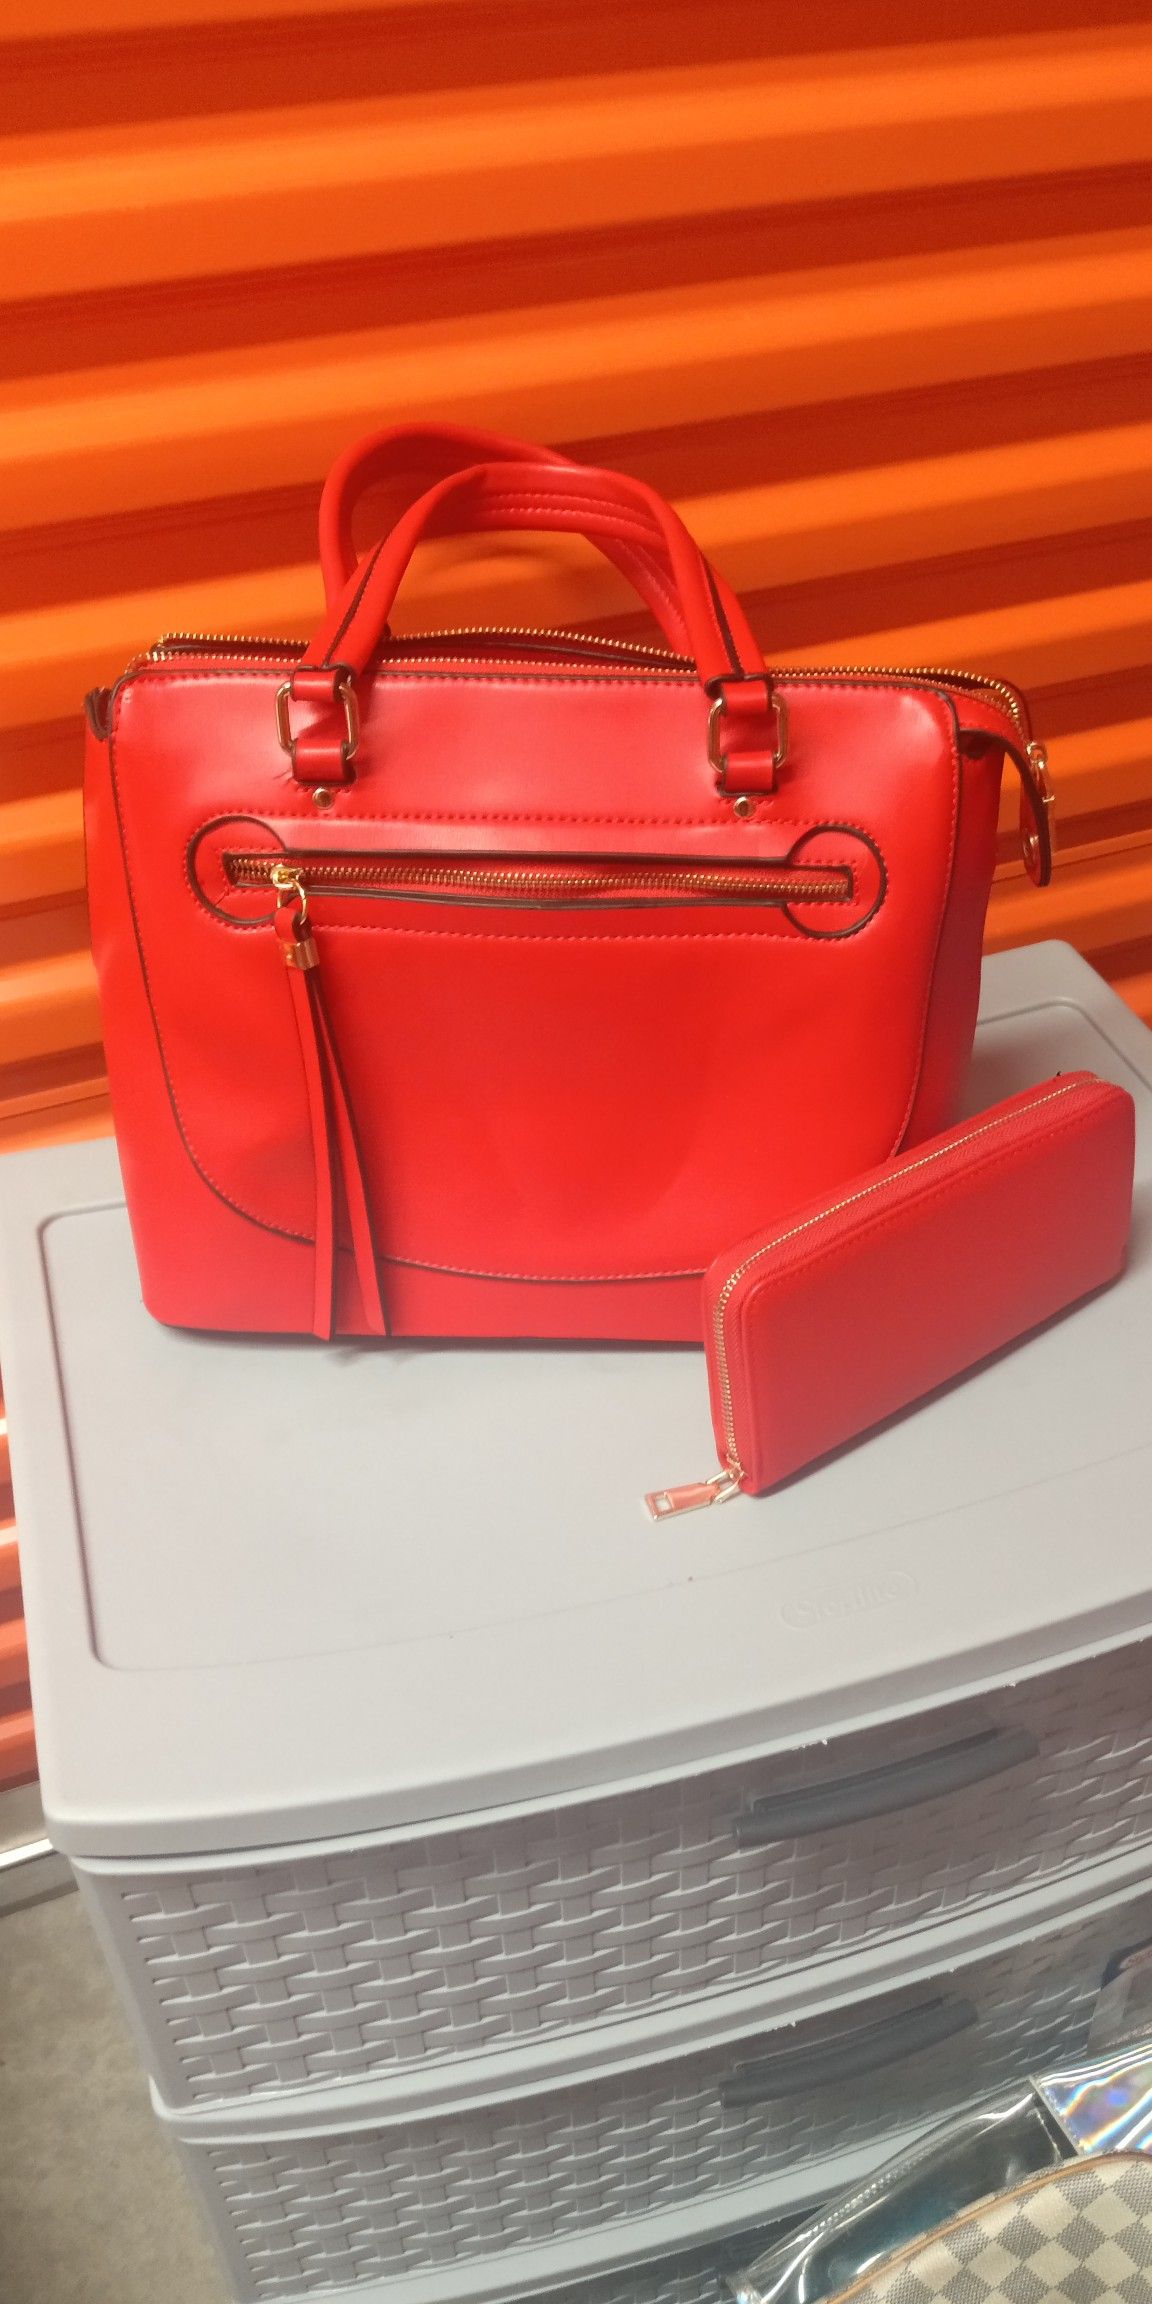 Red handbag and wallet